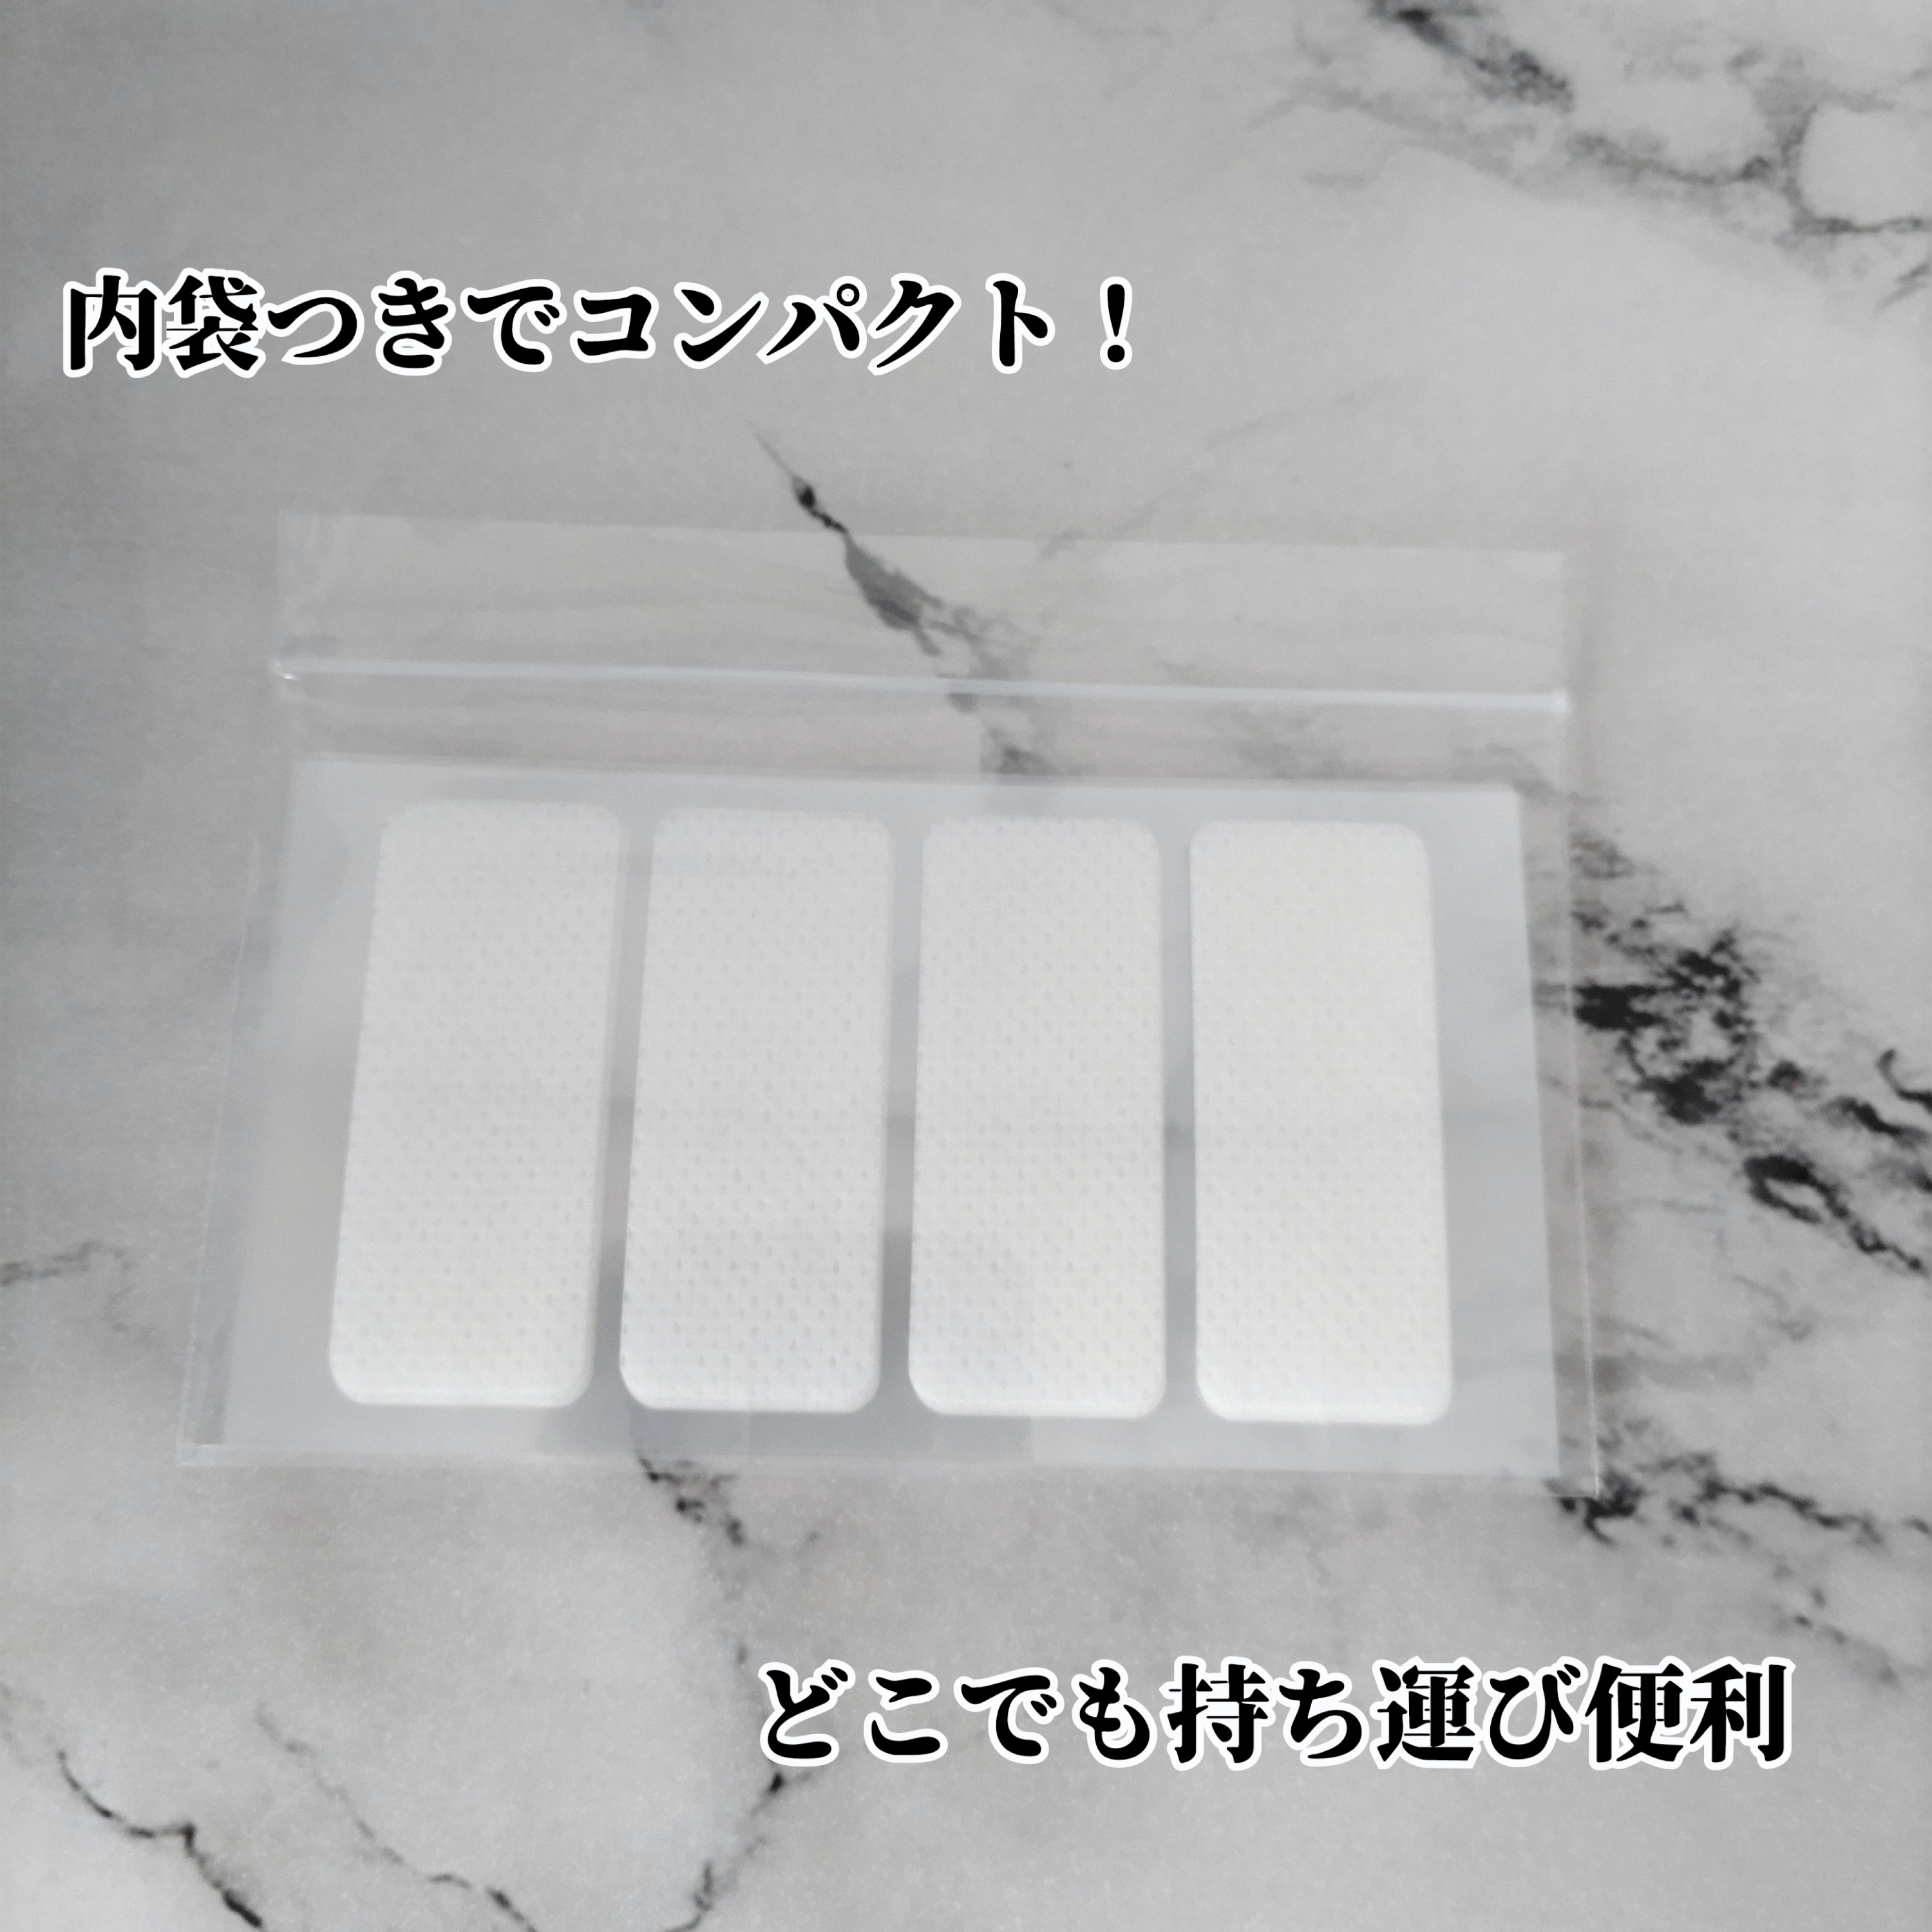 東洋化学株式会社　カバがCOVER! おやすみテープ 24枚入を使ったYuKaRi♡さんのクチコミ画像3